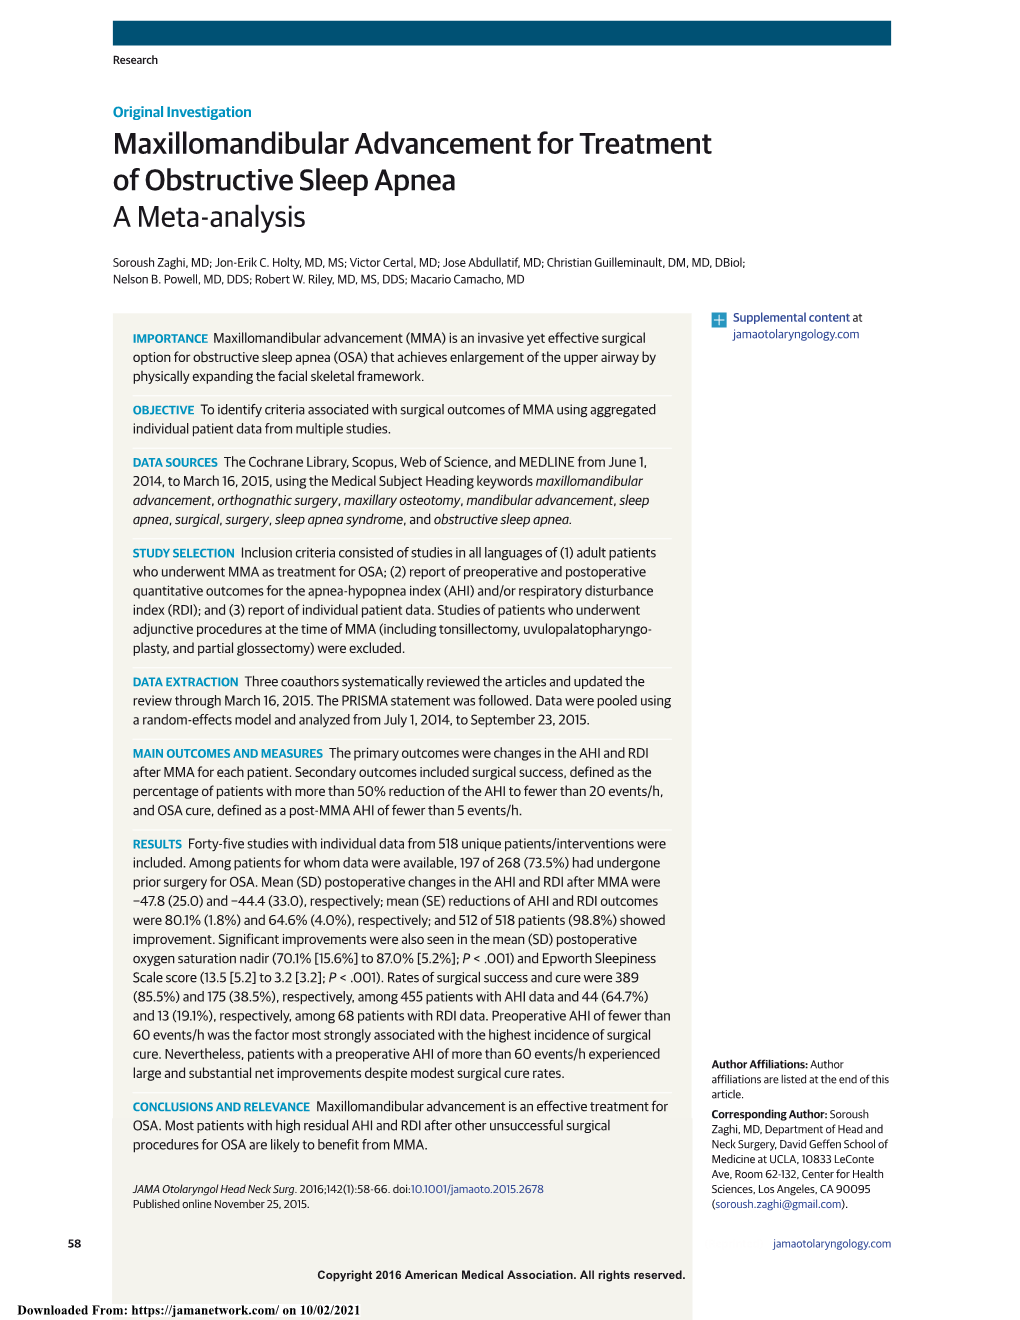 Maxillomandibular Advancement for Treatment of Obstructive Sleep Apnea a Meta-Analysis